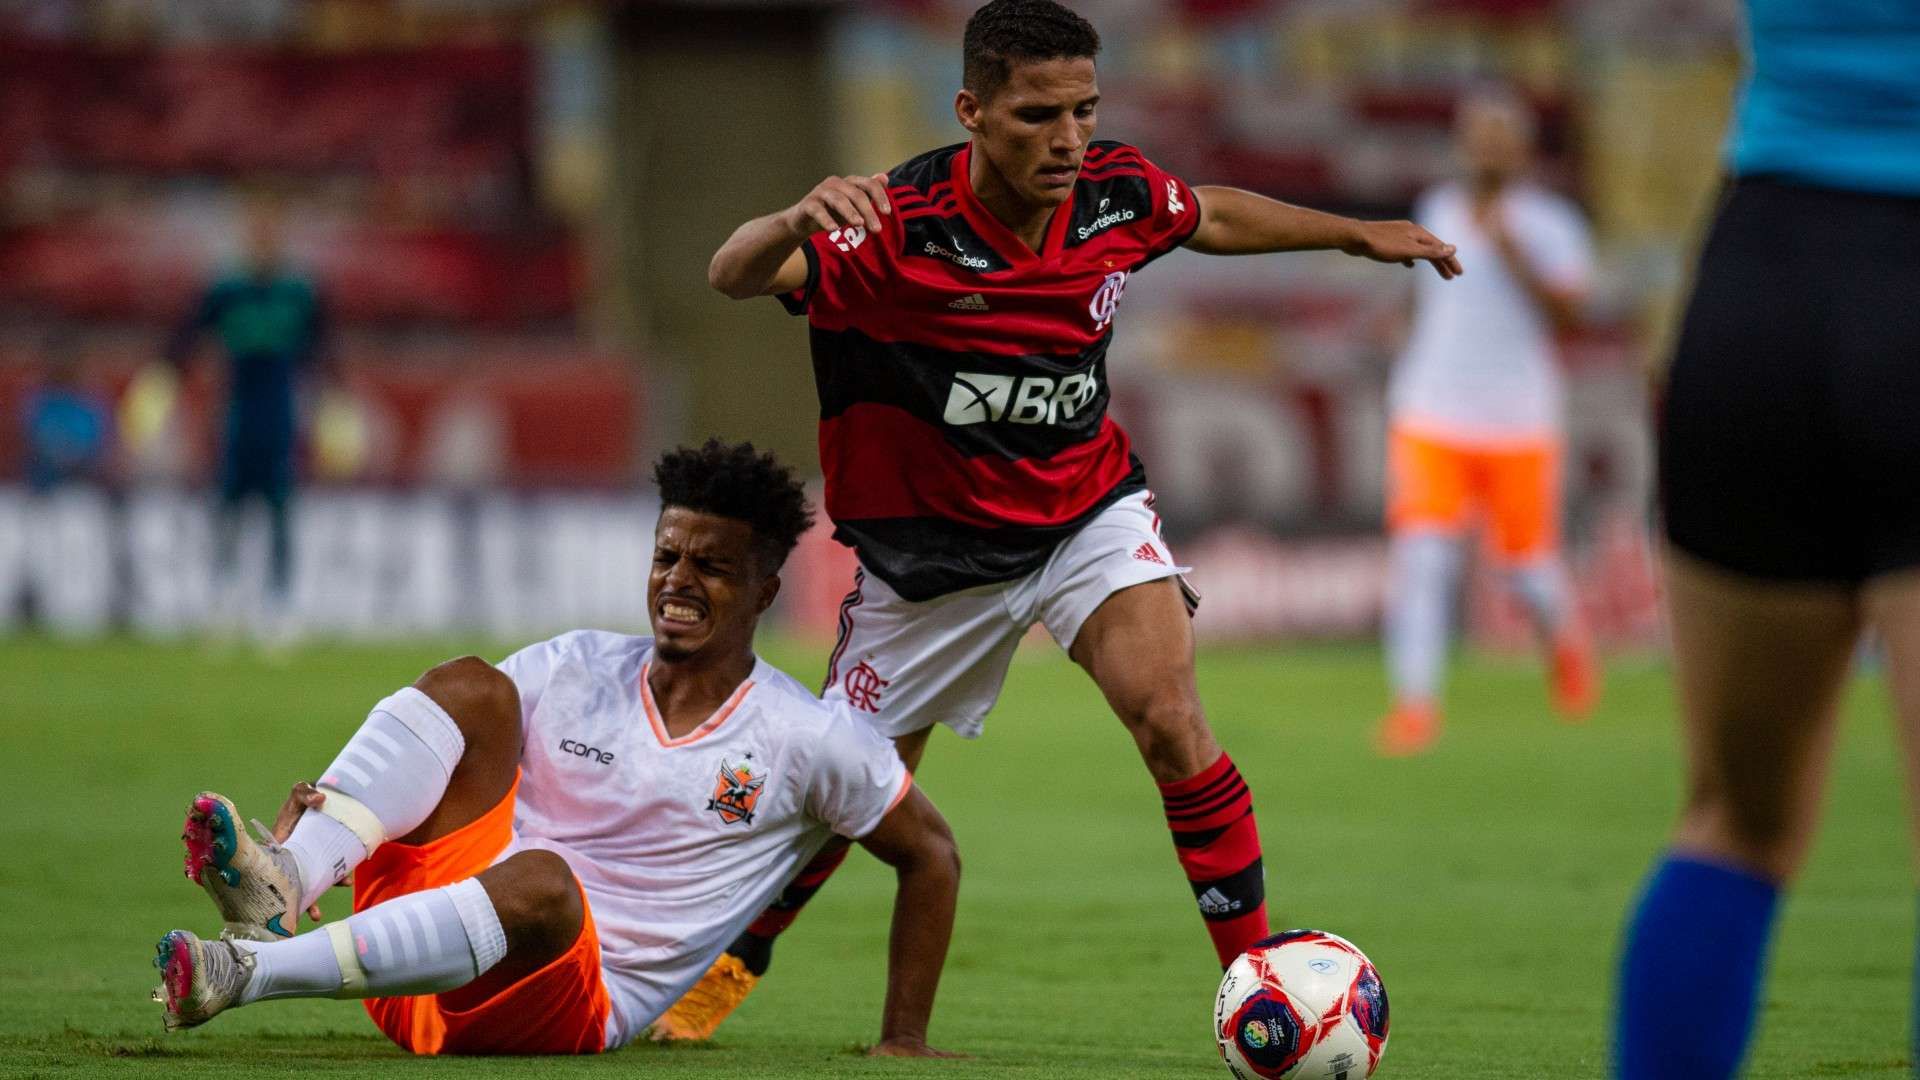 Thiaguinho Flamengo Nova Iguaçu Campeonato Carioca 02 03 2021